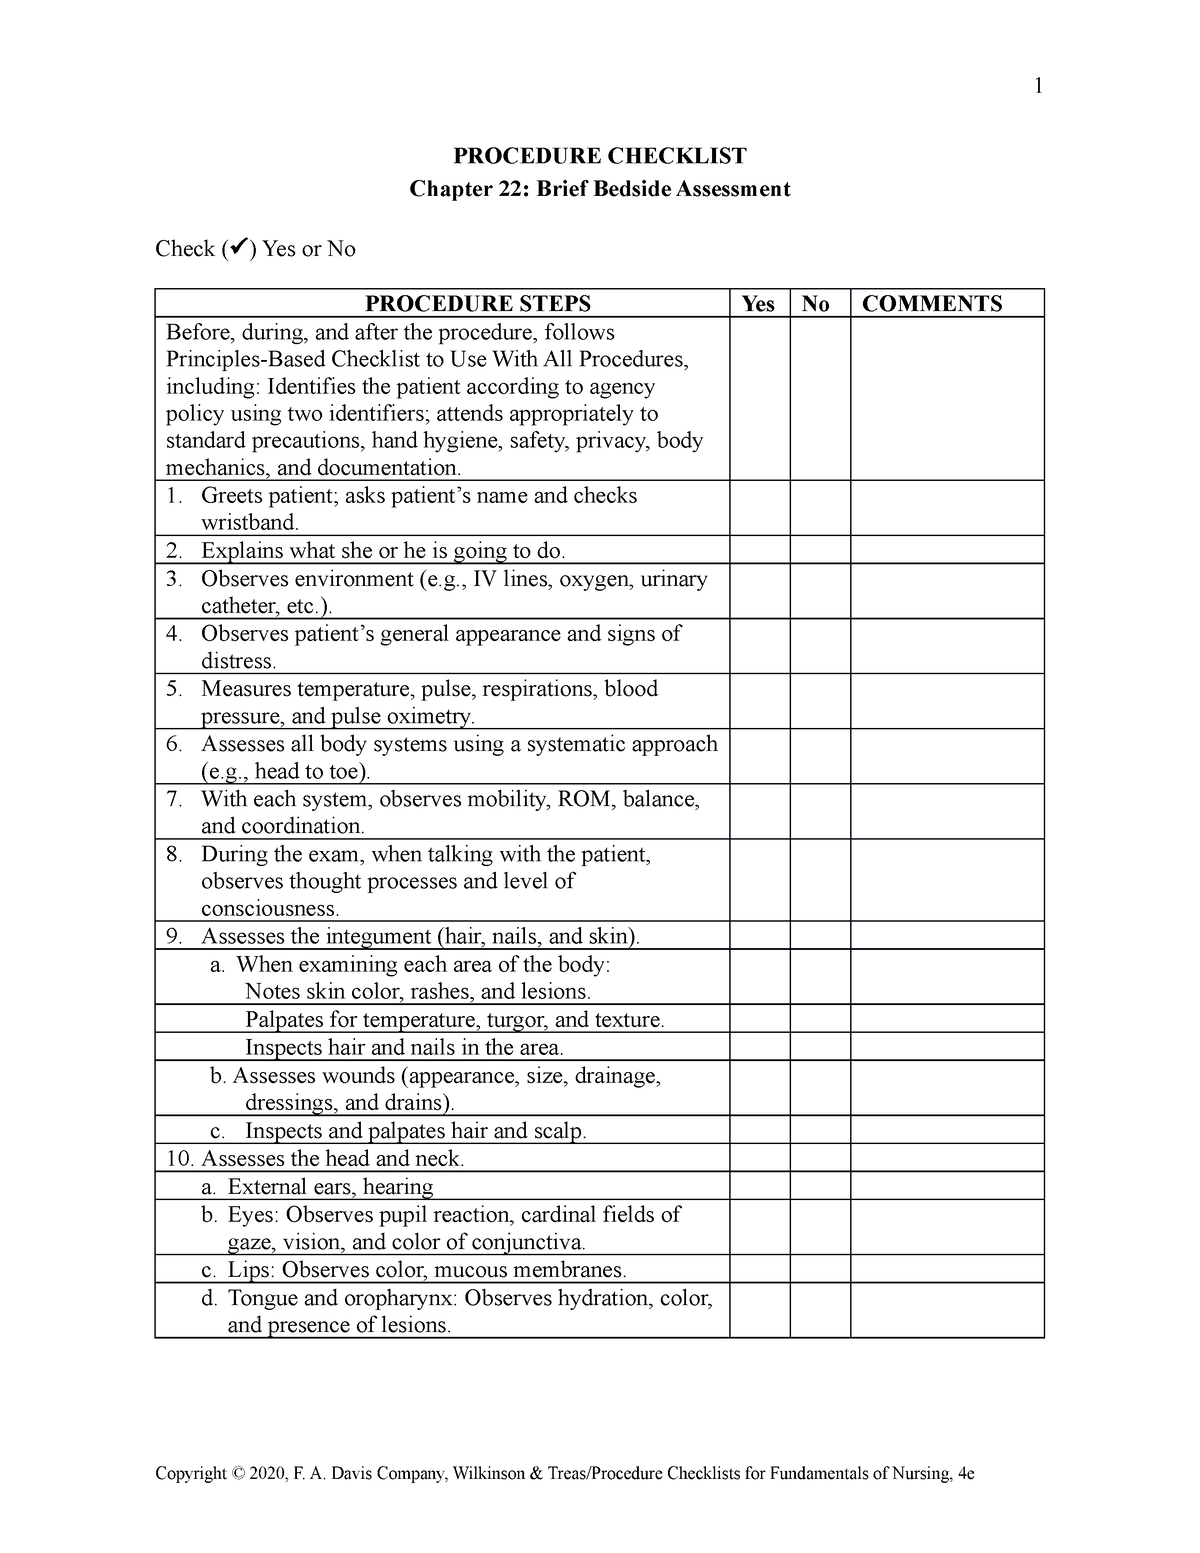 skills checklist bedside - 1 PROCEDURE CHECKLIST Chapter 22: Brief ...